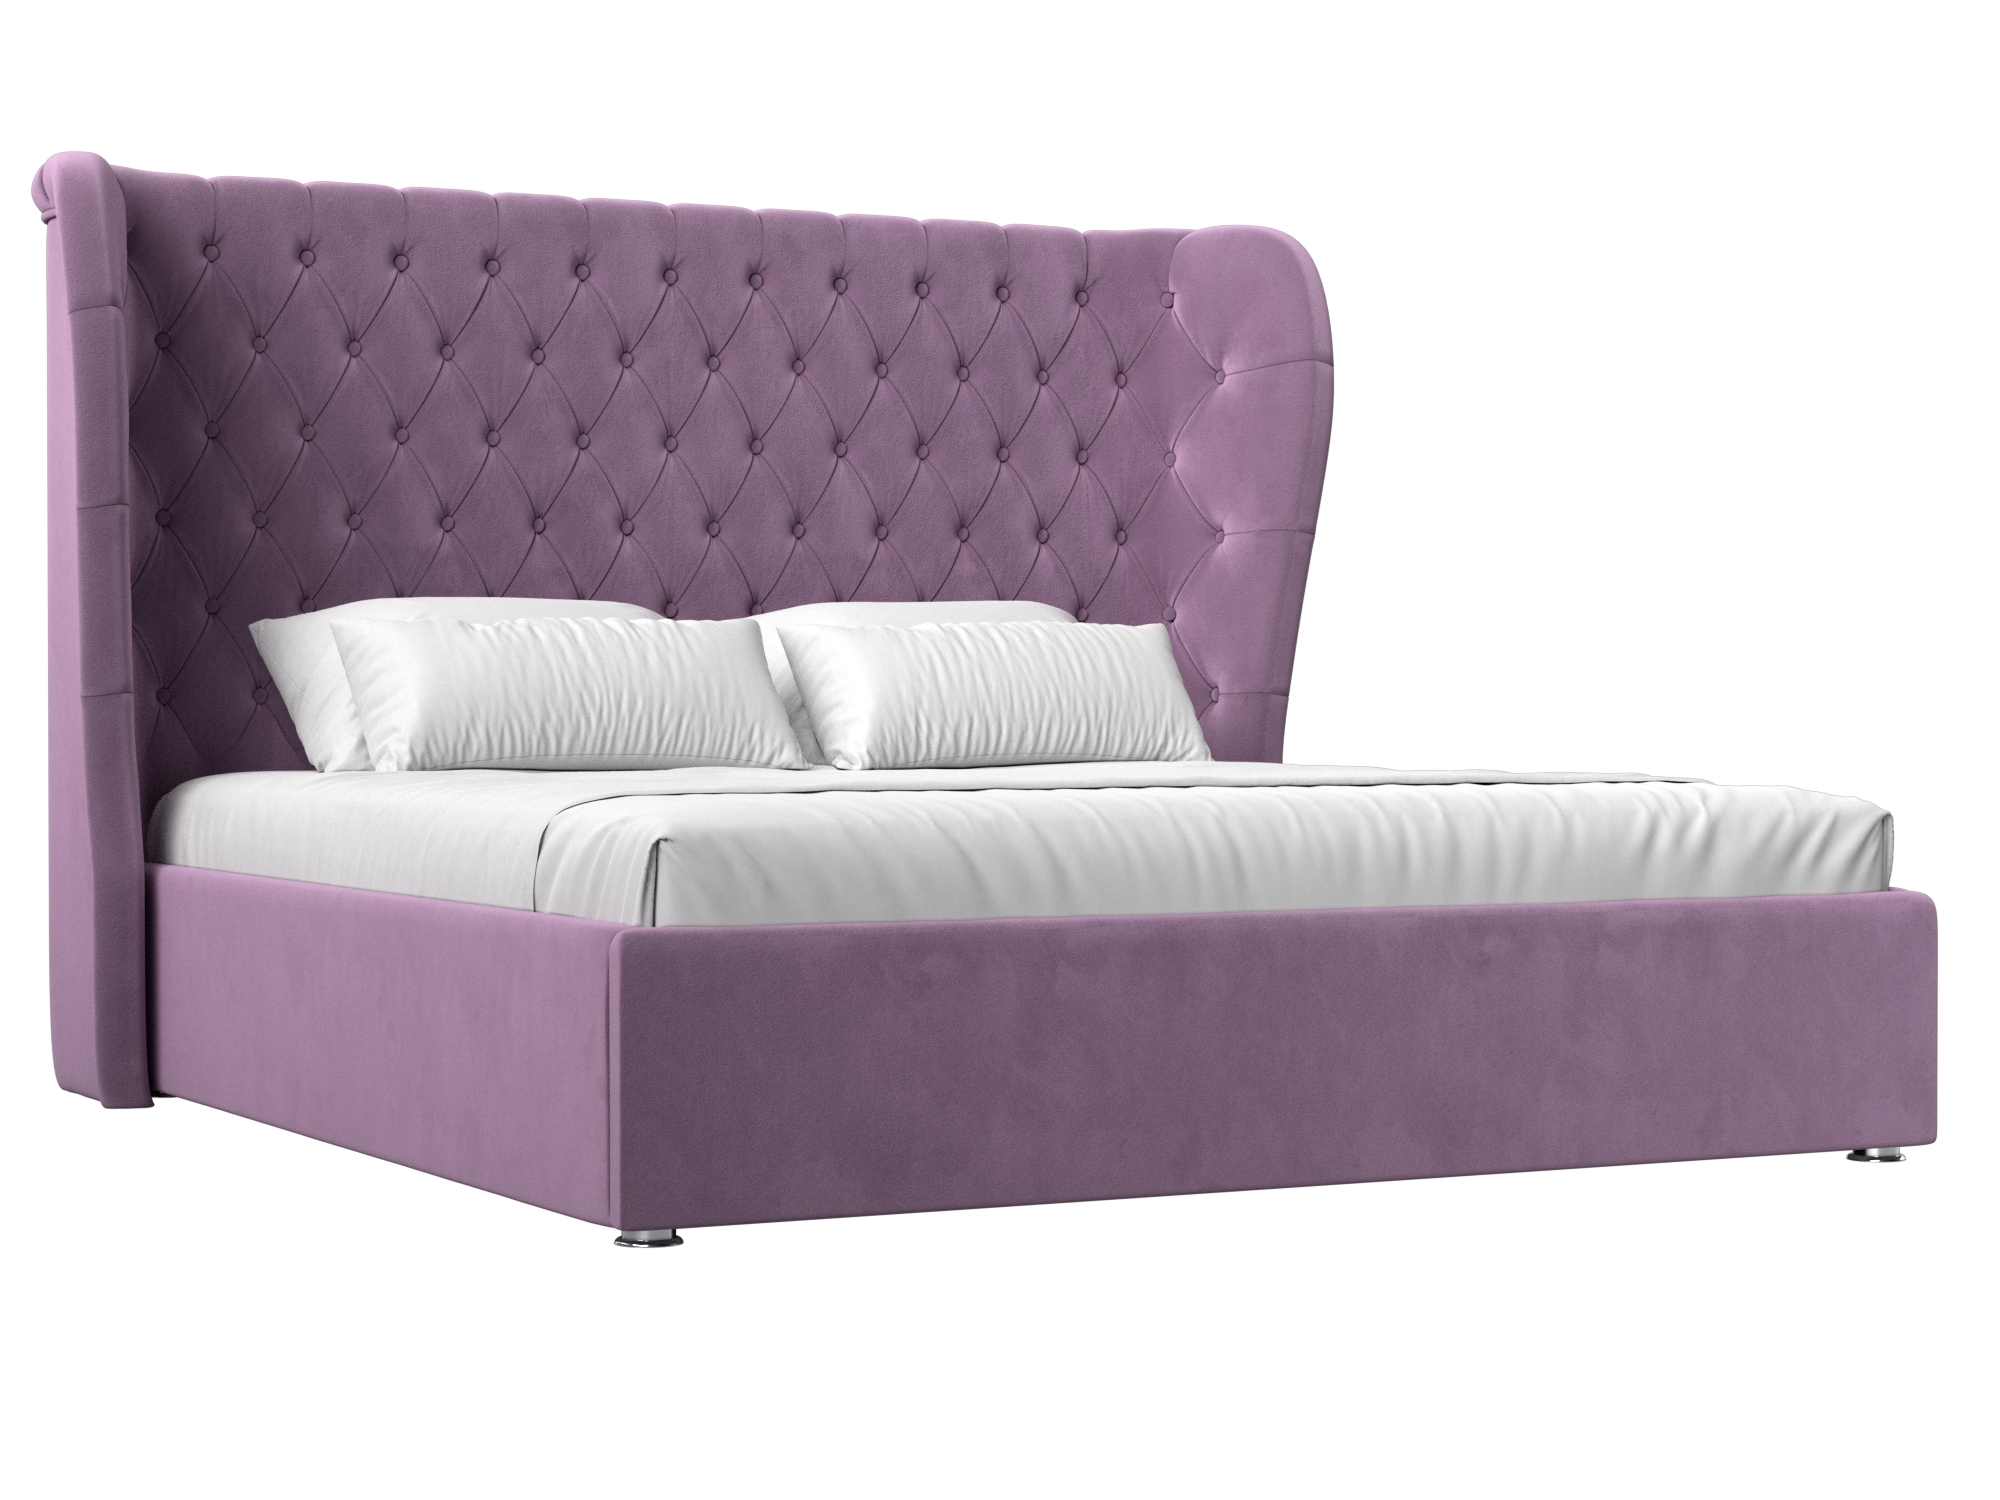 Интерьерная кровать Далия 160 (Сиреневый)